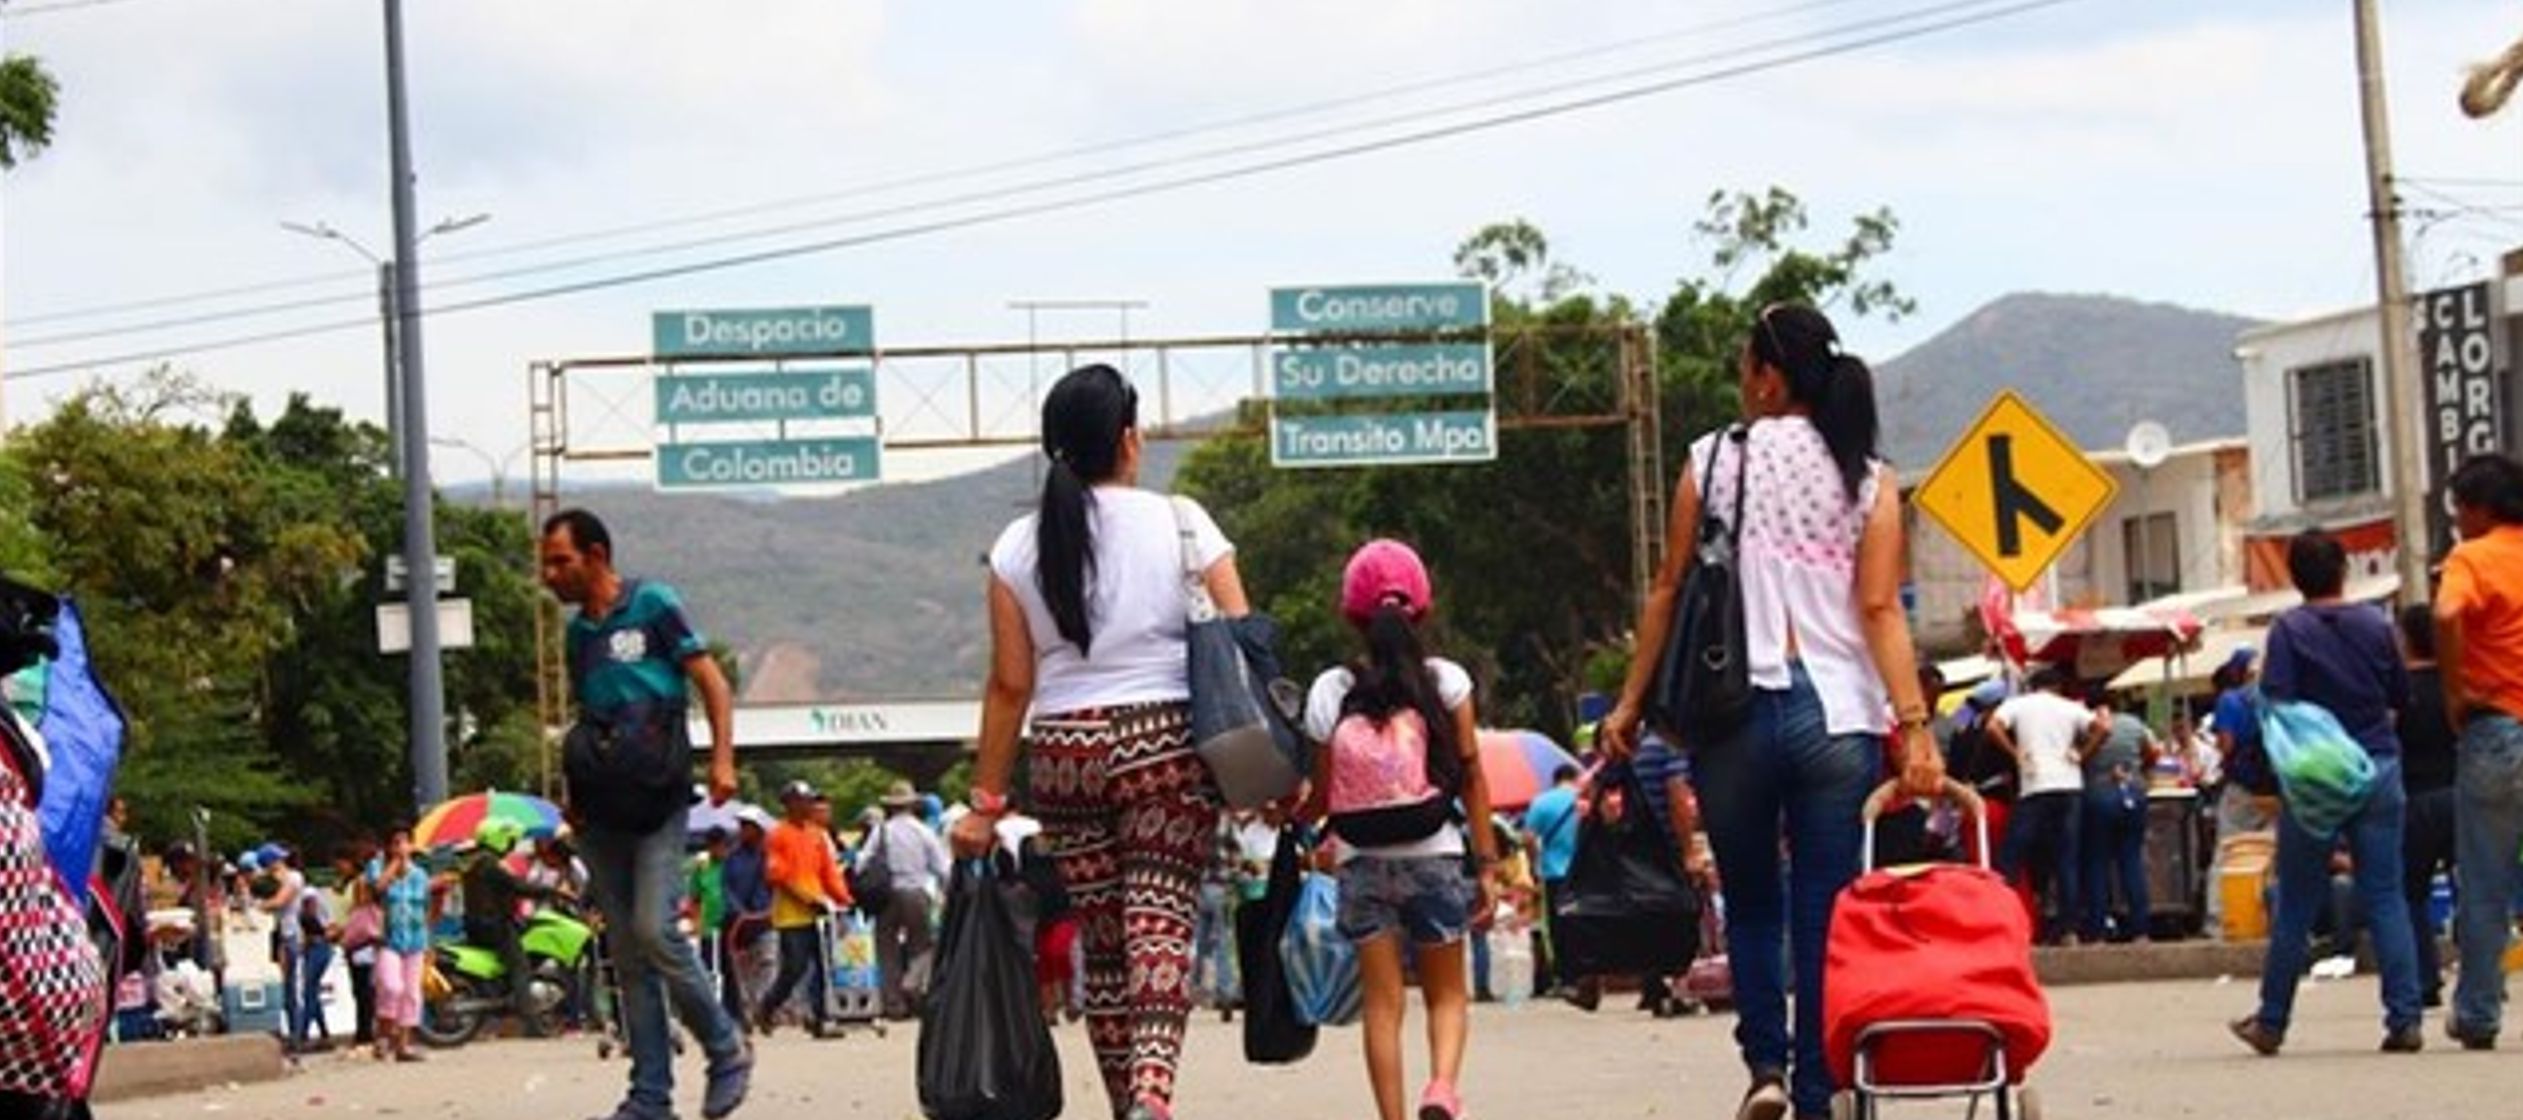 Migrará a Argentina, que, según Naciones Unidas, acoge ya a 130,000 venezolanos.